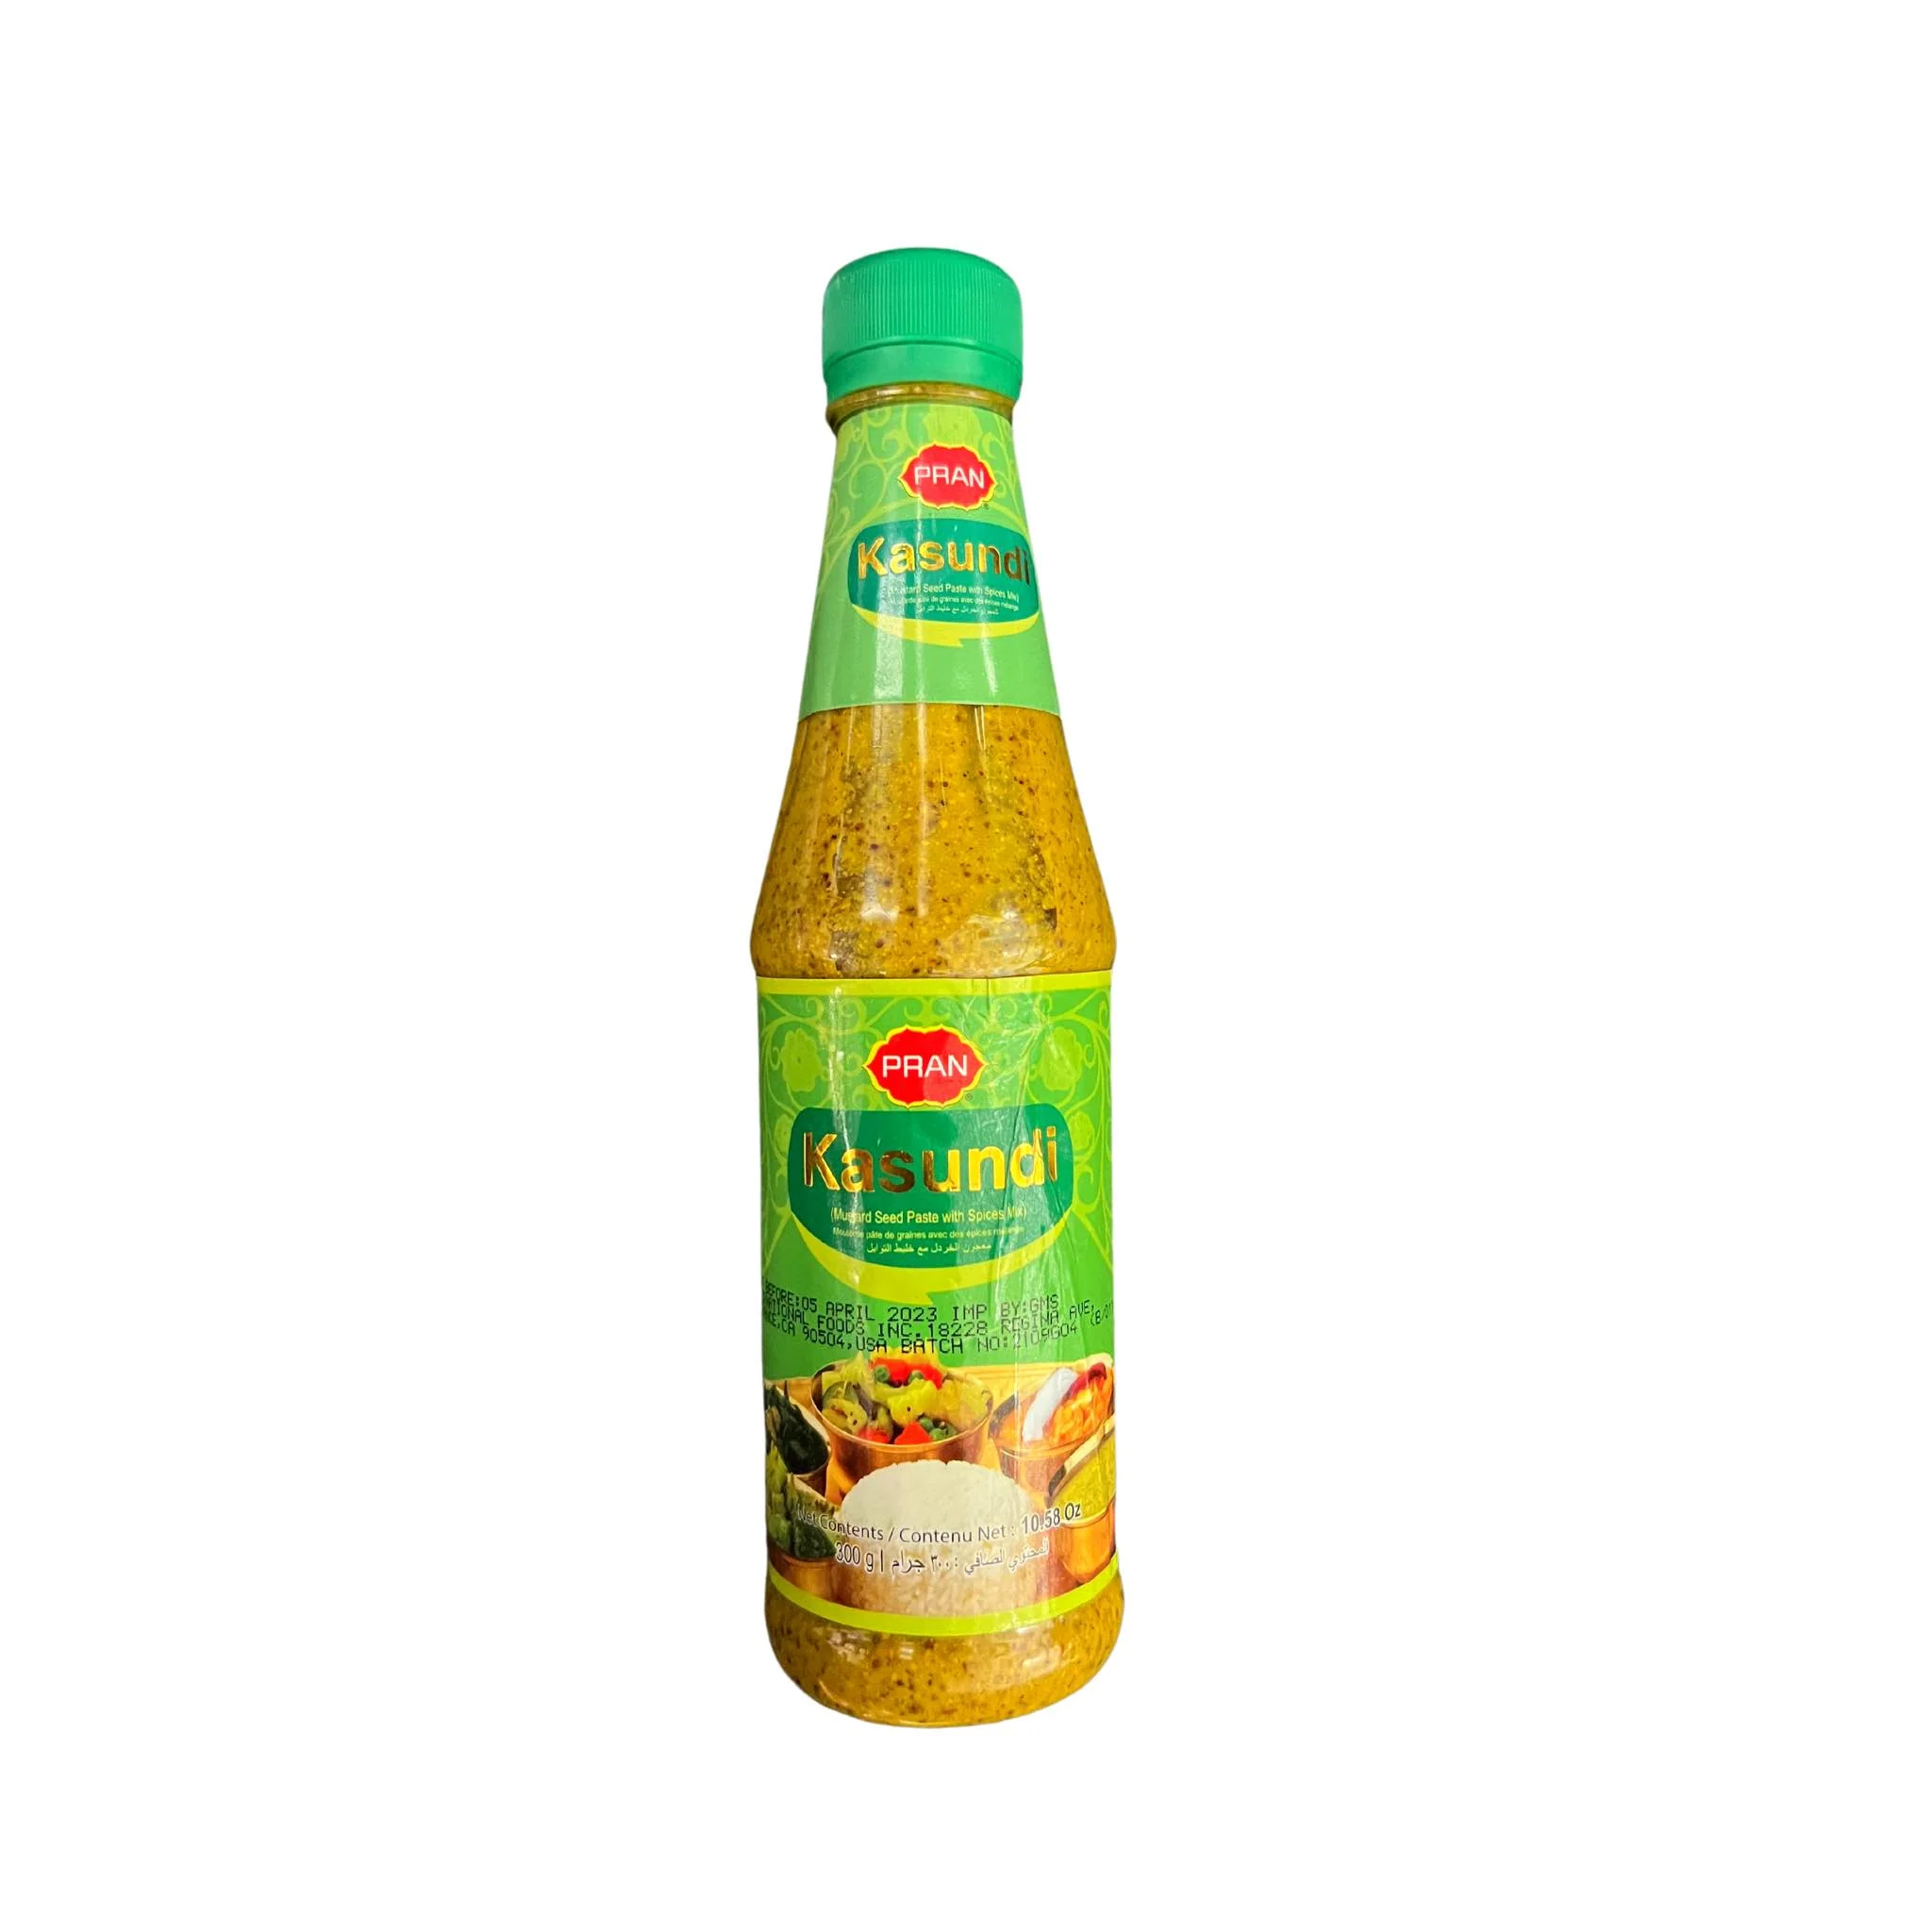 Kasundi (Pran)- Mustard Seed Paste